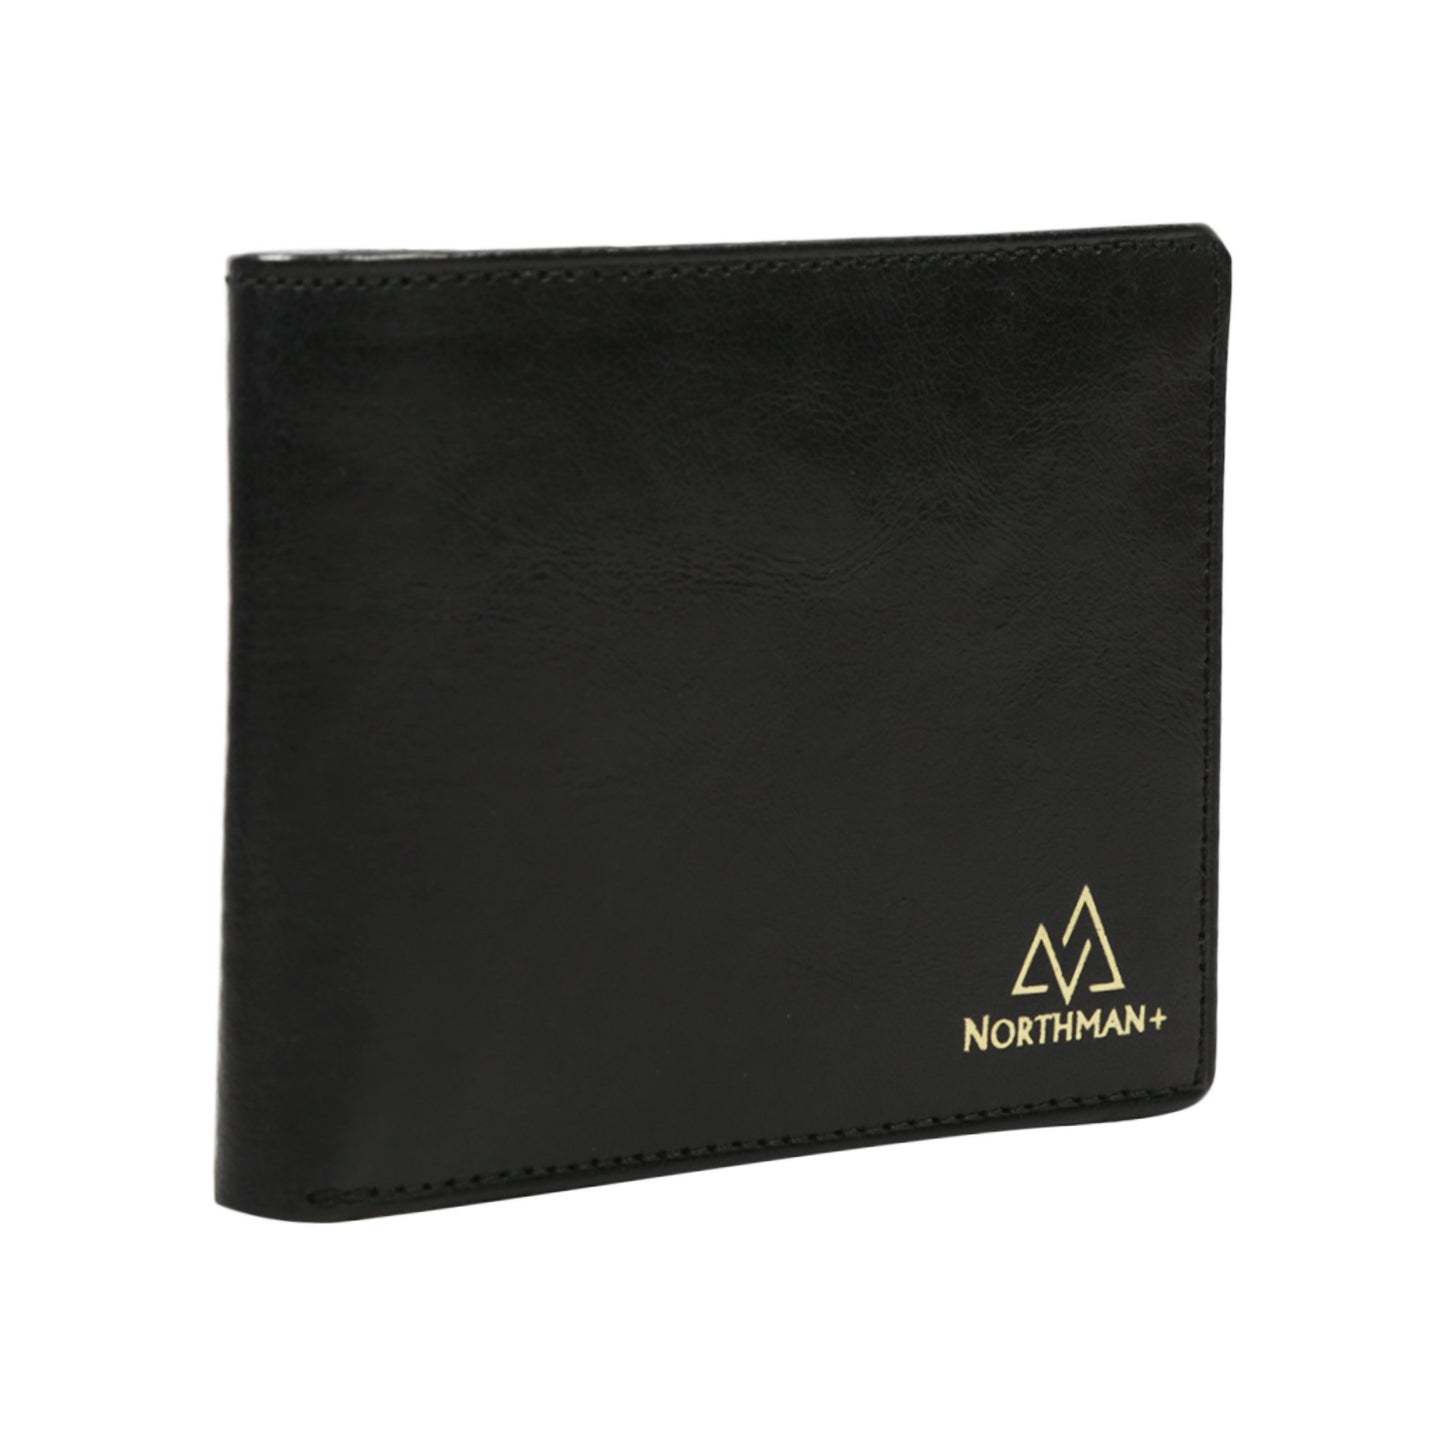 Men's Bifold Classic Slim wallet Black